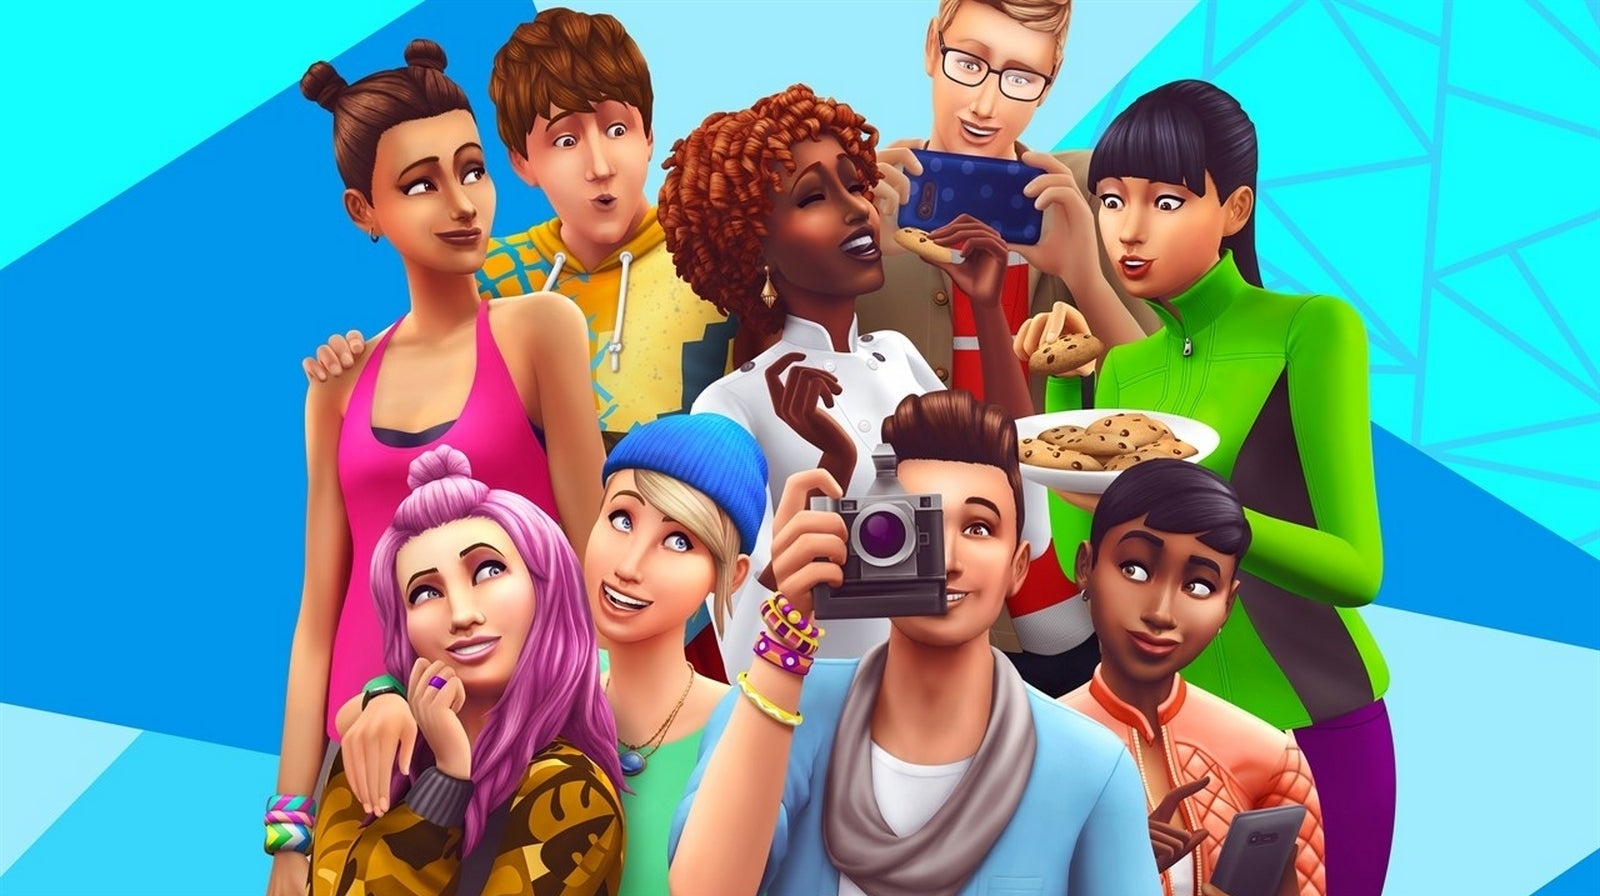 Bilder zu Spark'd ist eine neue Sims-Reality-TV-Show